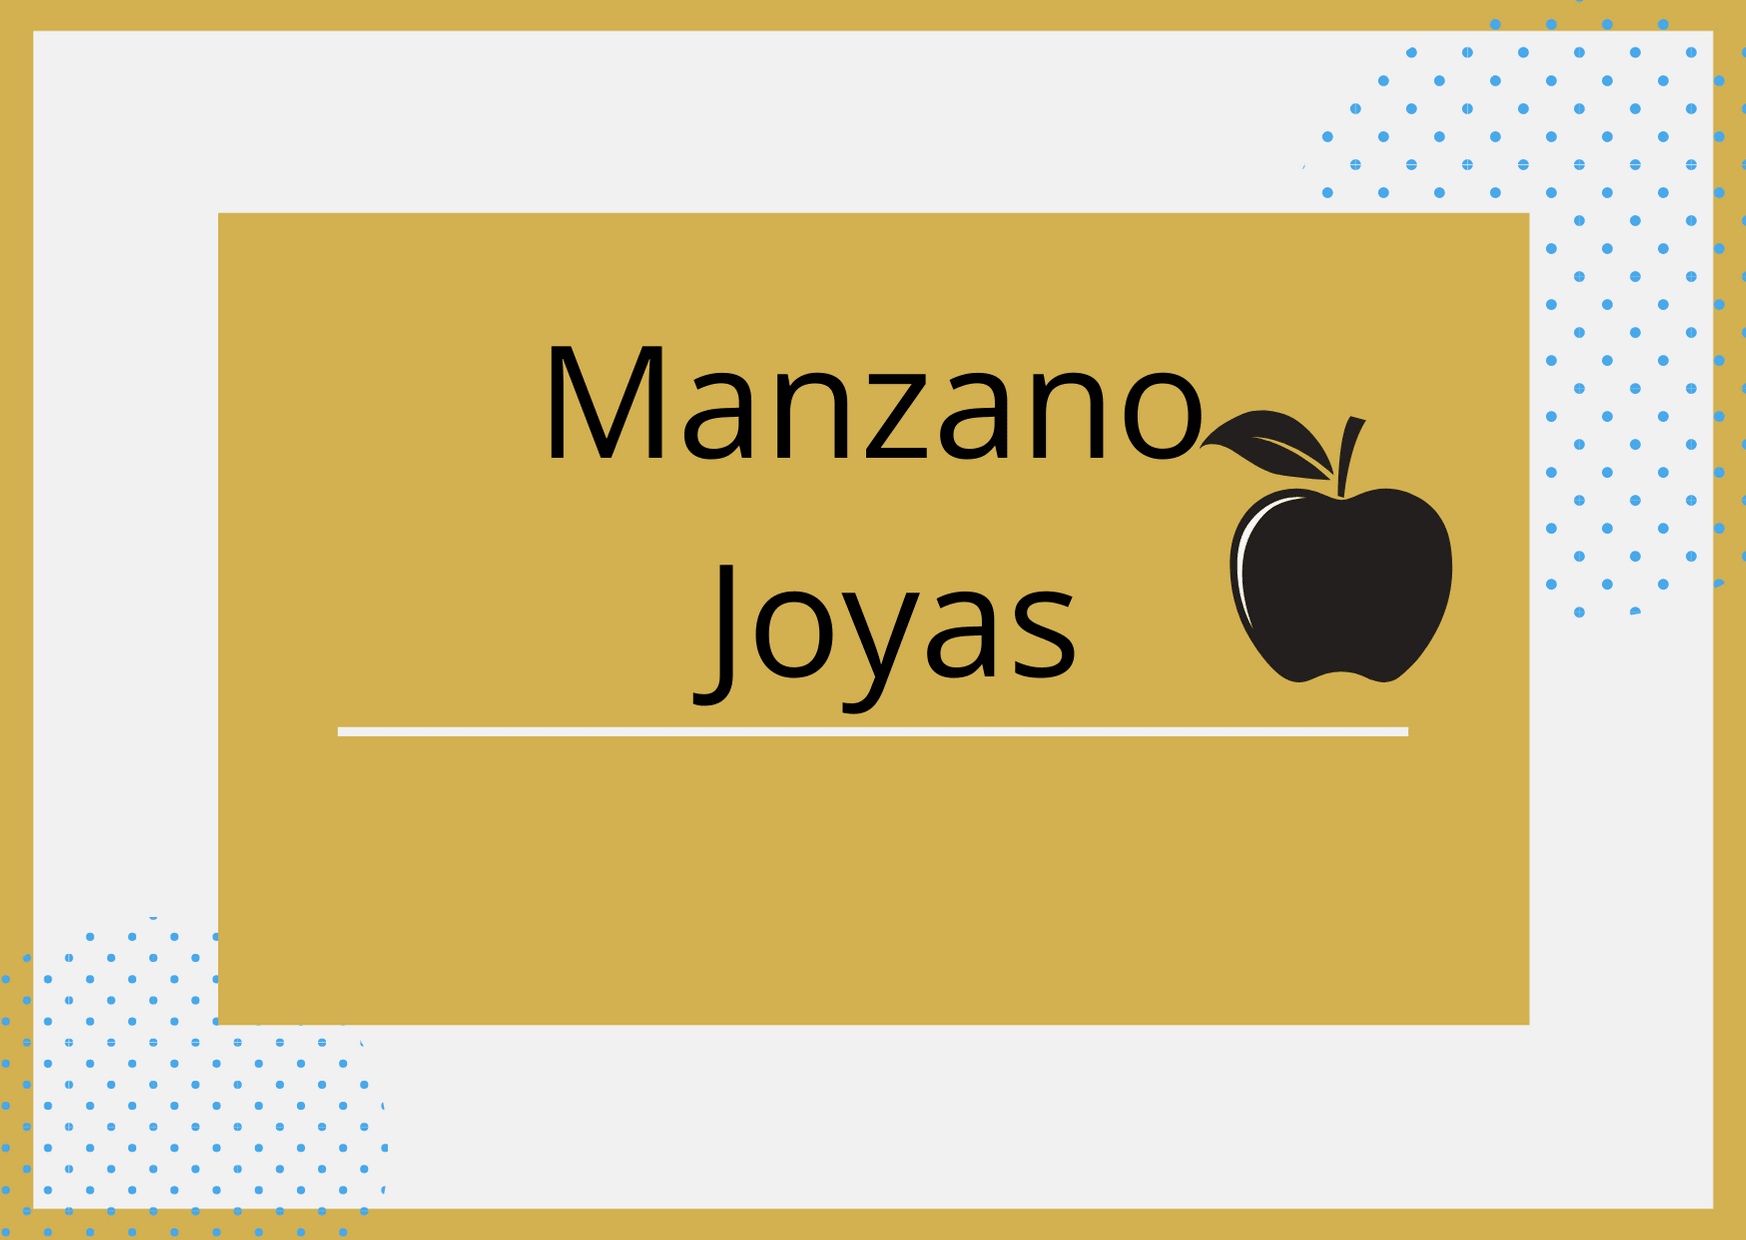 Joyería Manzano